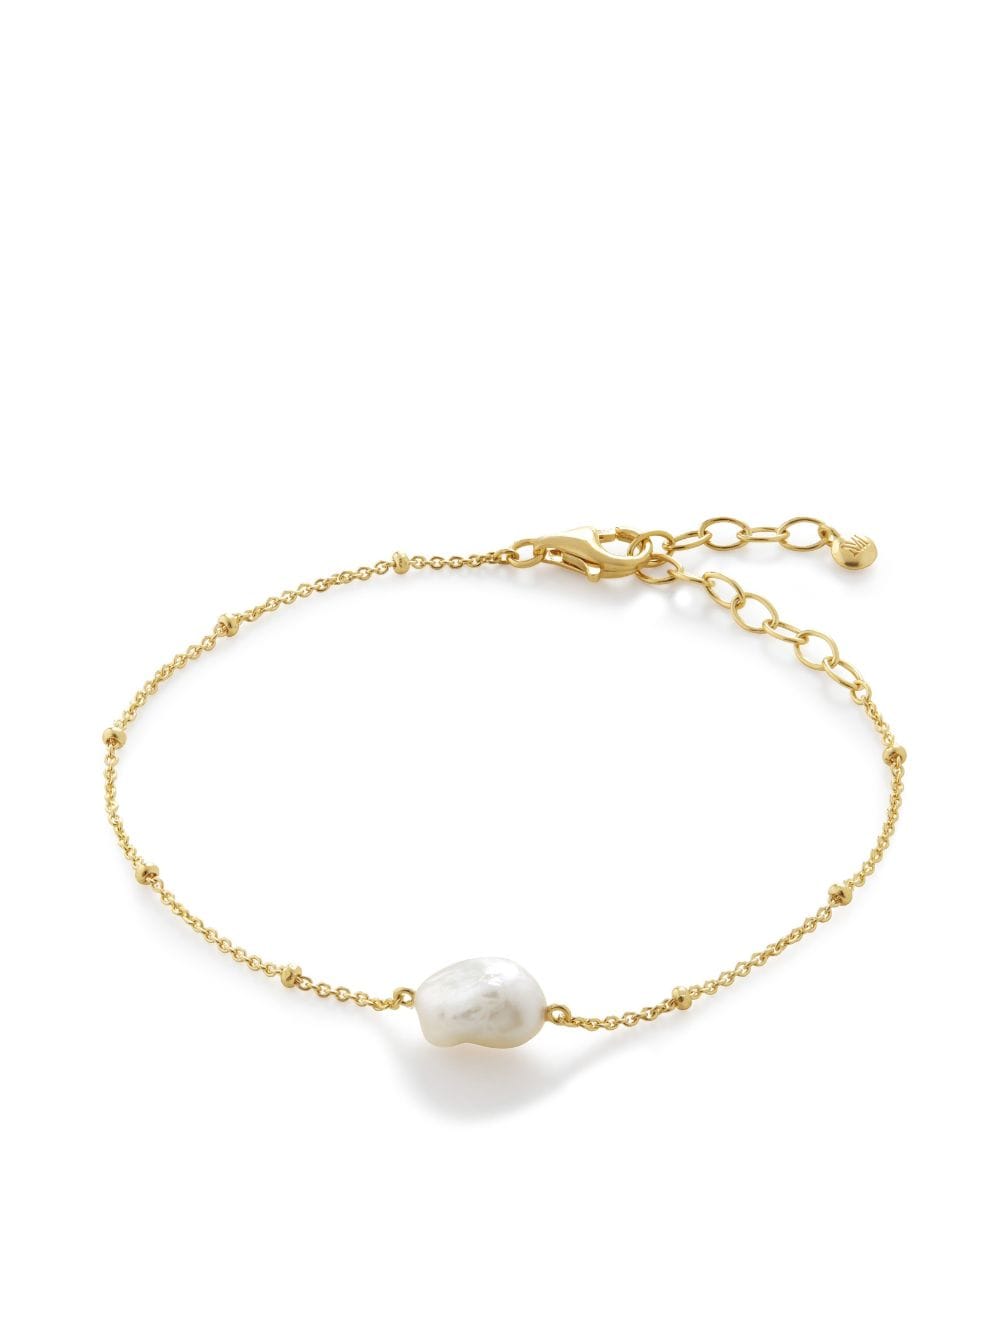 Monica Vinader Nura Armband mit Perlen - Gold von Monica Vinader